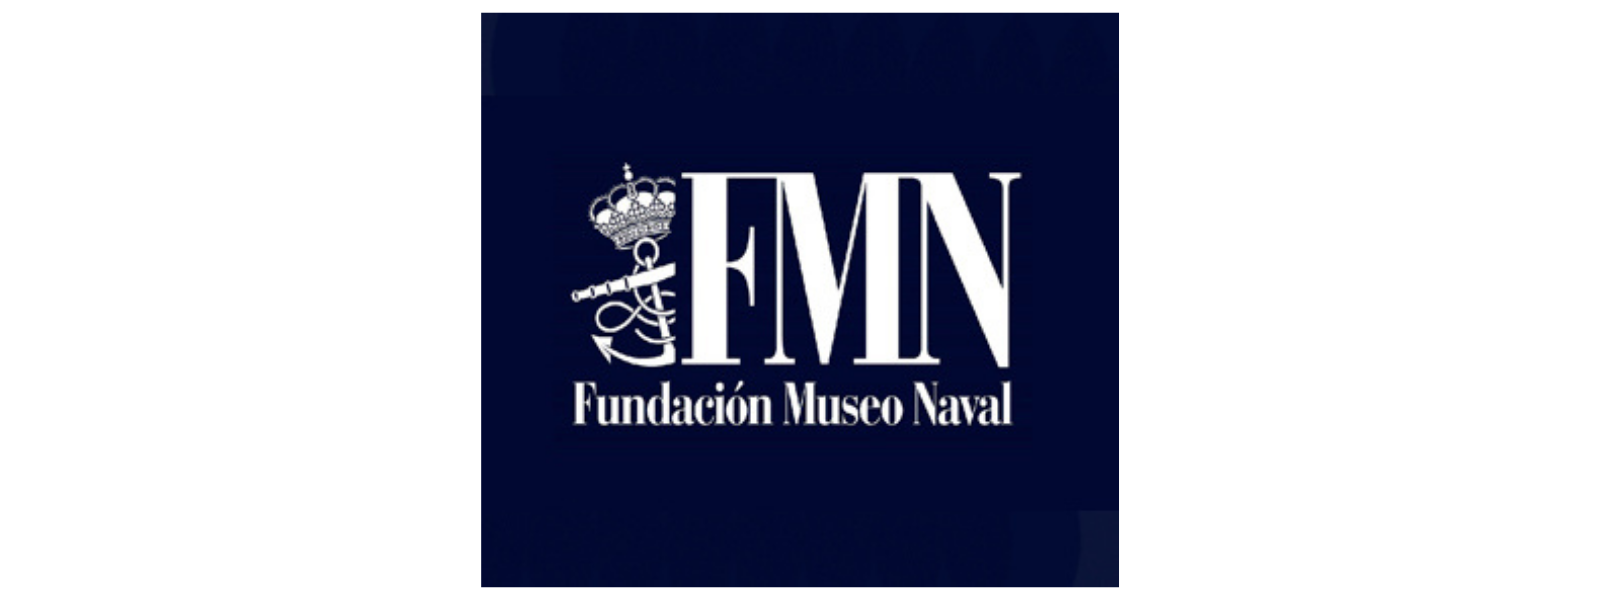 canva-fundacion-museo-naval-.png